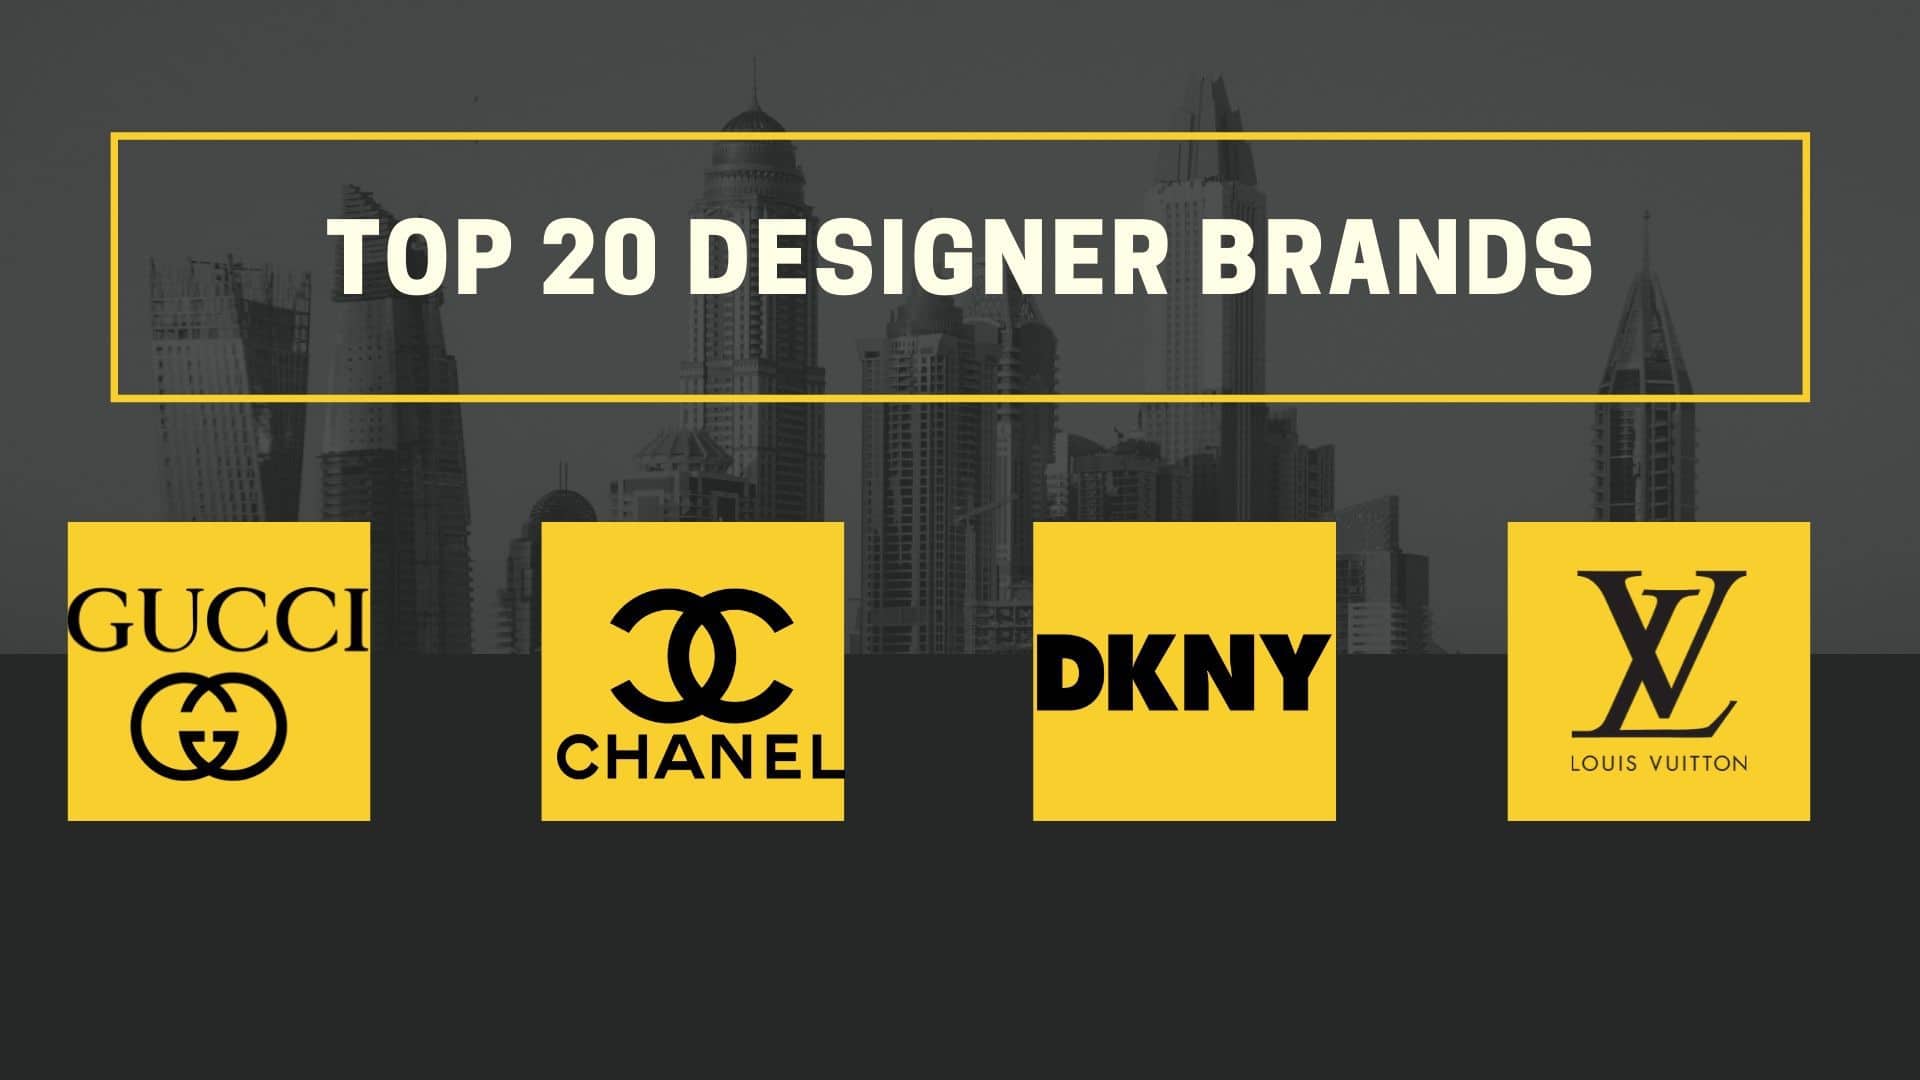 Top 20 Designer Brands | Marketing91